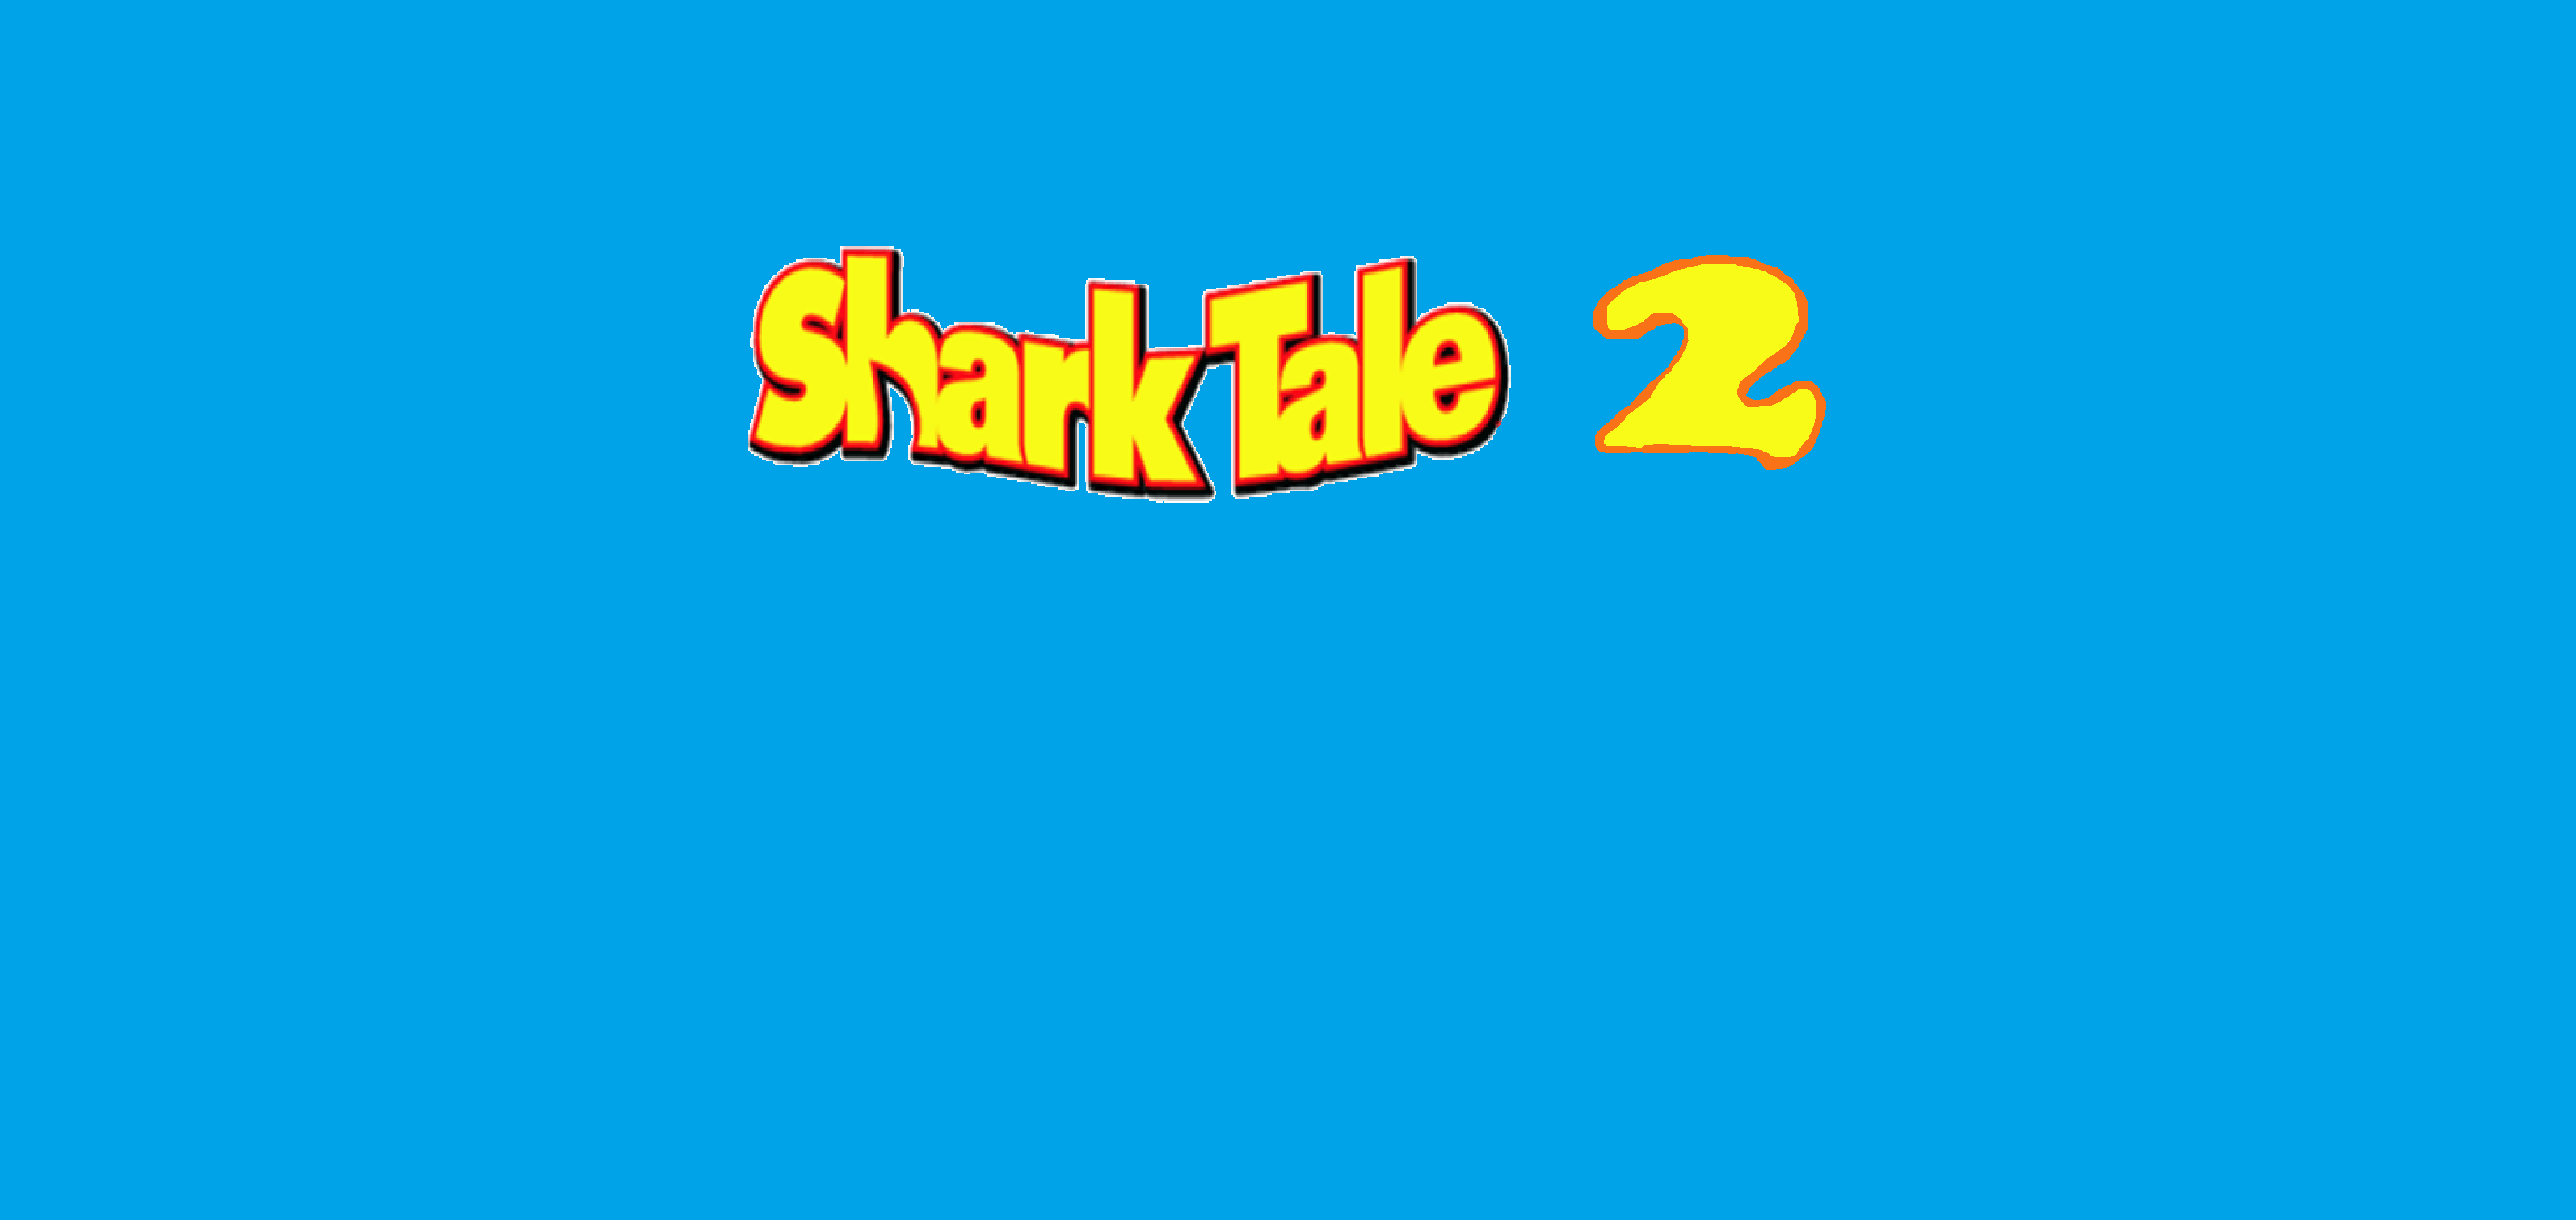 Shark Tale Logo - Shark Tale 2 (2019 3D animated comedy movie) | Idea Wiki ...